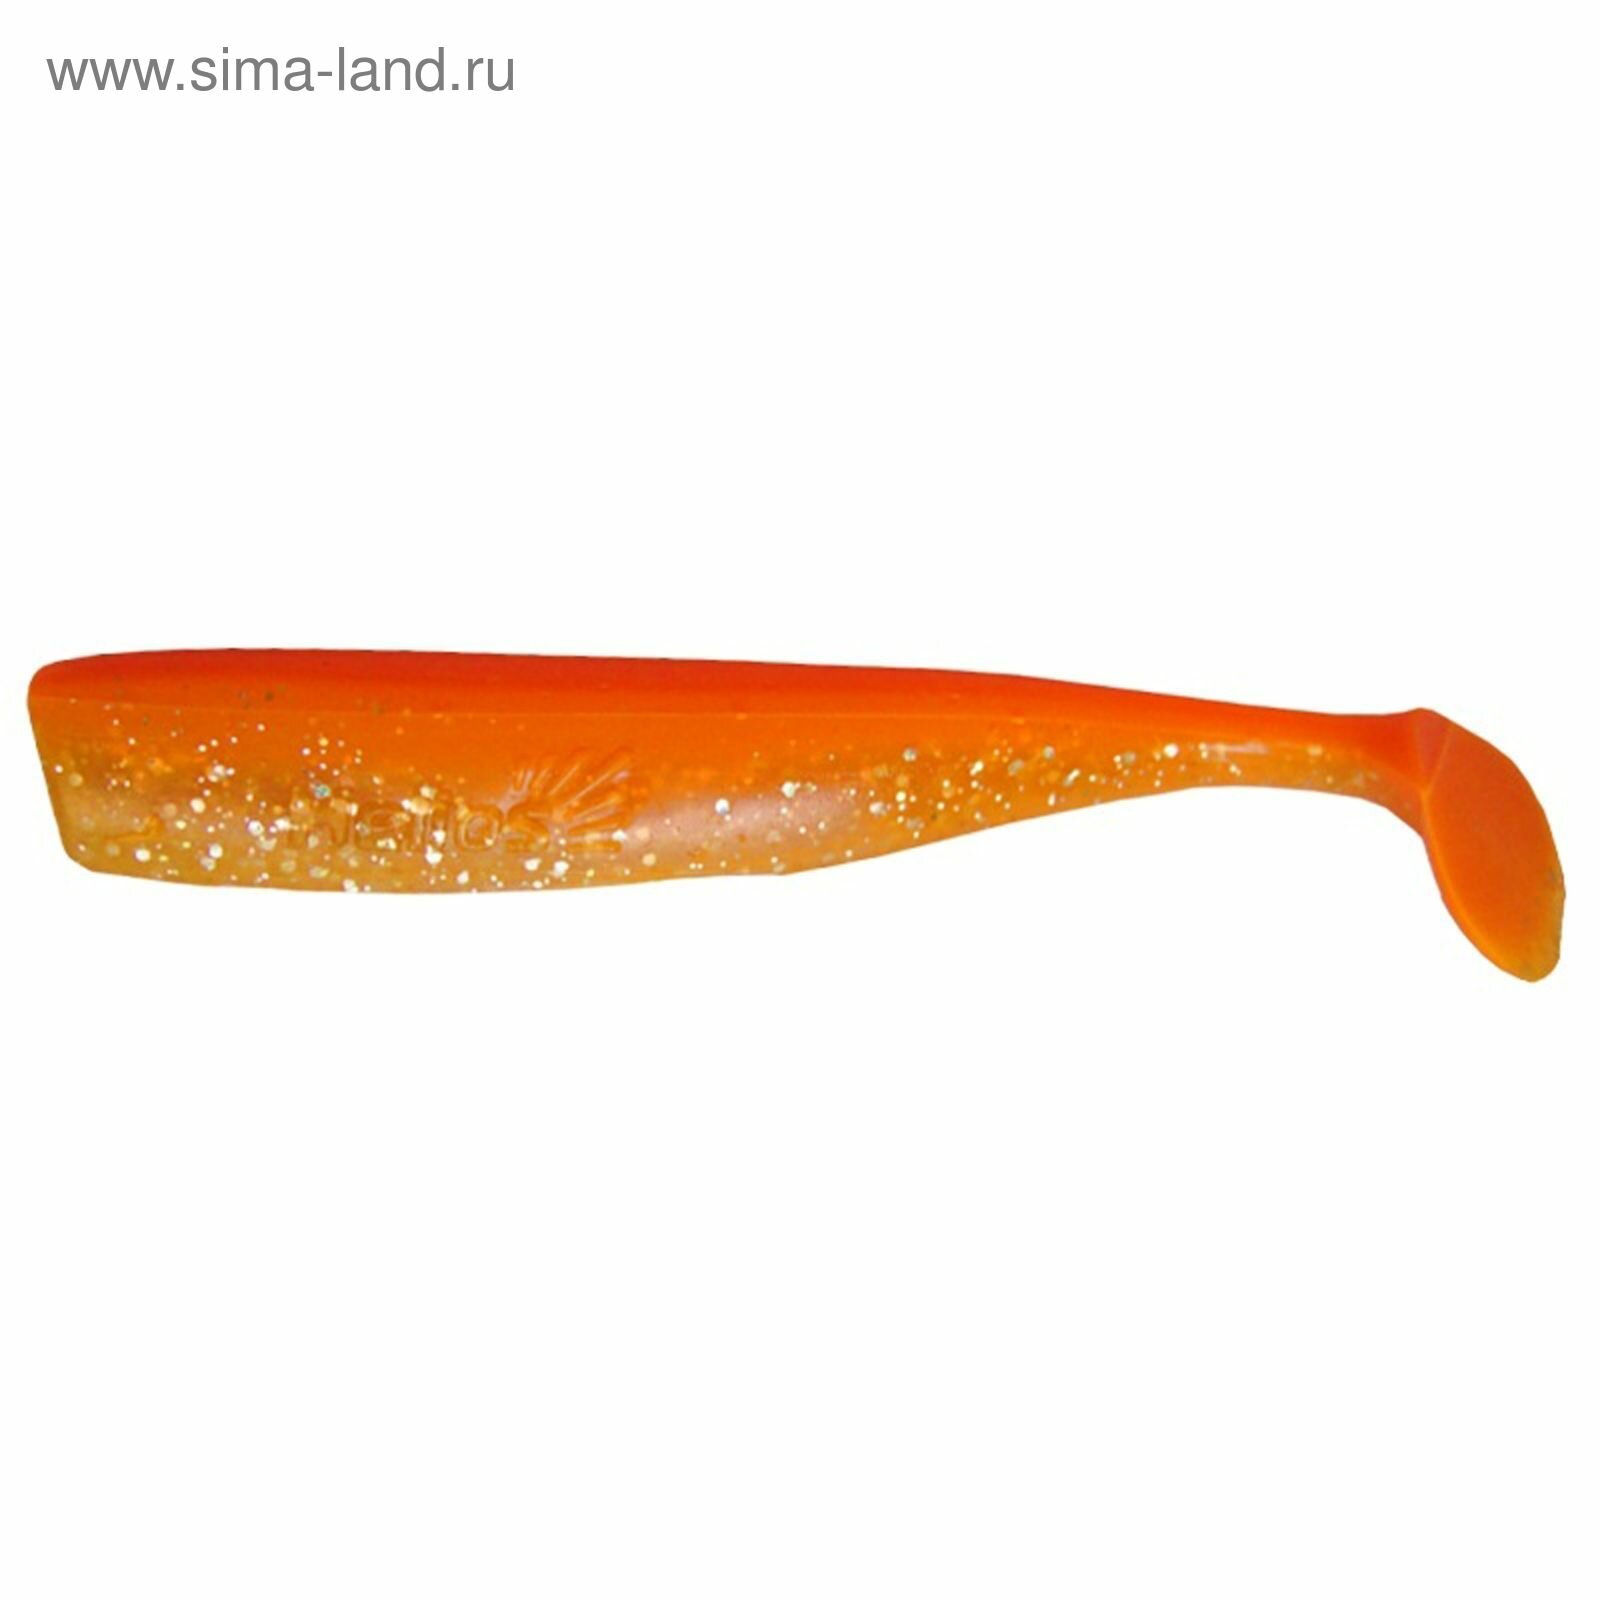 Виброхвост Chebak Orange & Sparkles, 8 см, 7 шт. (HS-3-022)